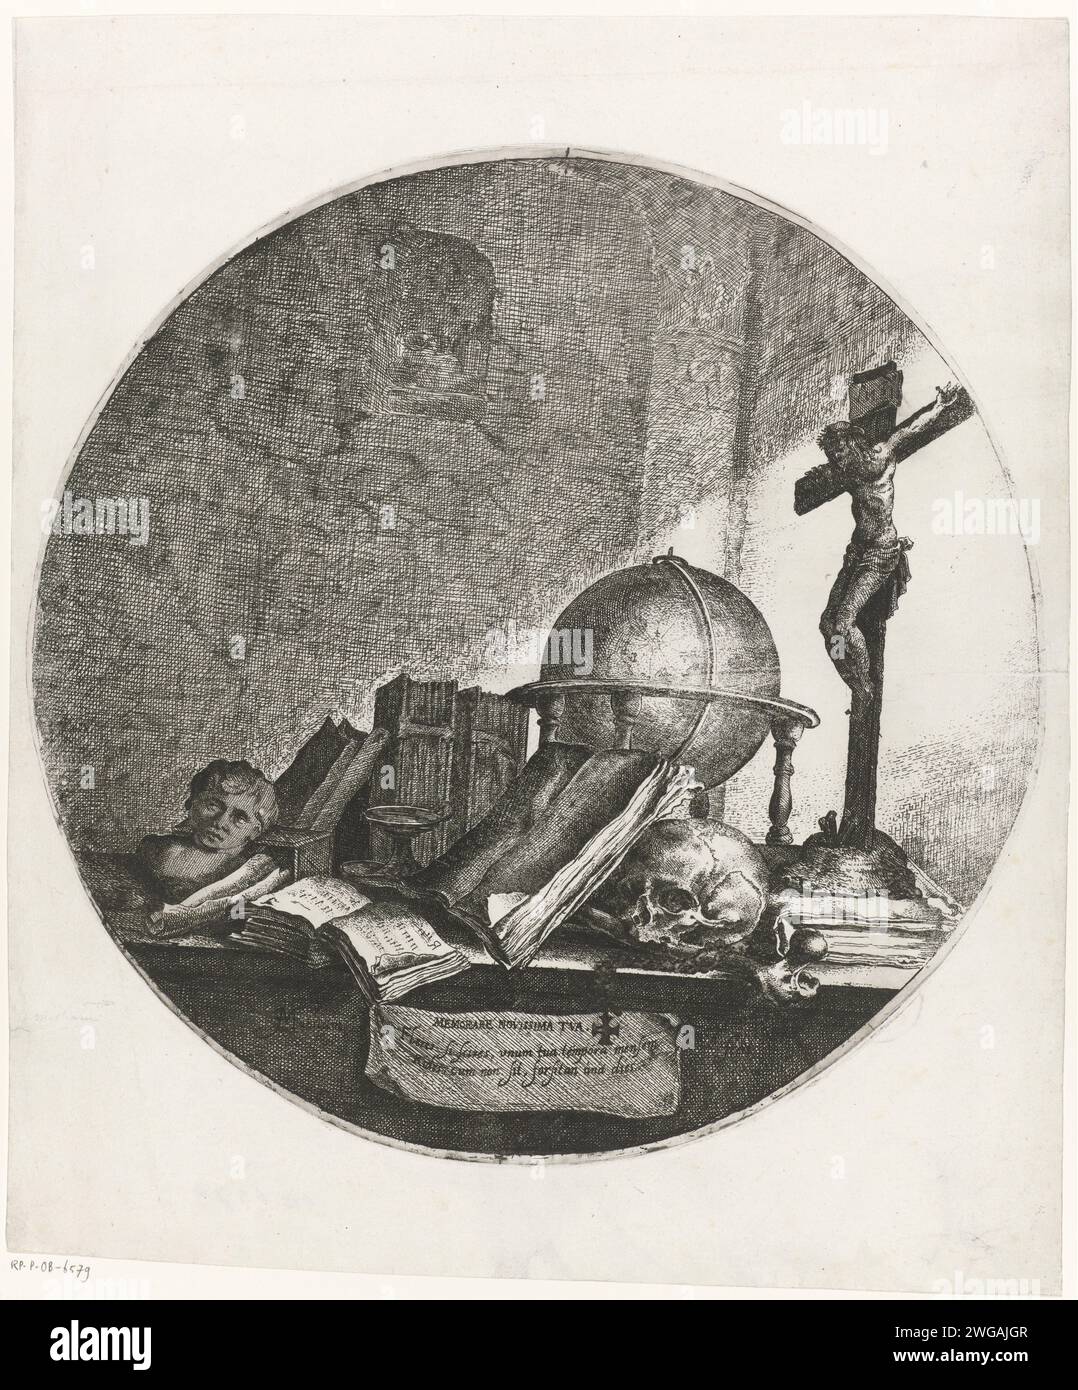 Vanitas mit Globe, Kruzifix, Schädel und Büchern, Jan Matham, nach Jacob Matham, 1628 - 1648 Druck Vanitasstill Life mit einer Kugel, einem Kruzifix, einem Schädel, einem Knochen und Büchern auf einem Tisch Haarlem Papier, das 'Vanitas' Stillleben graviert Stockfoto